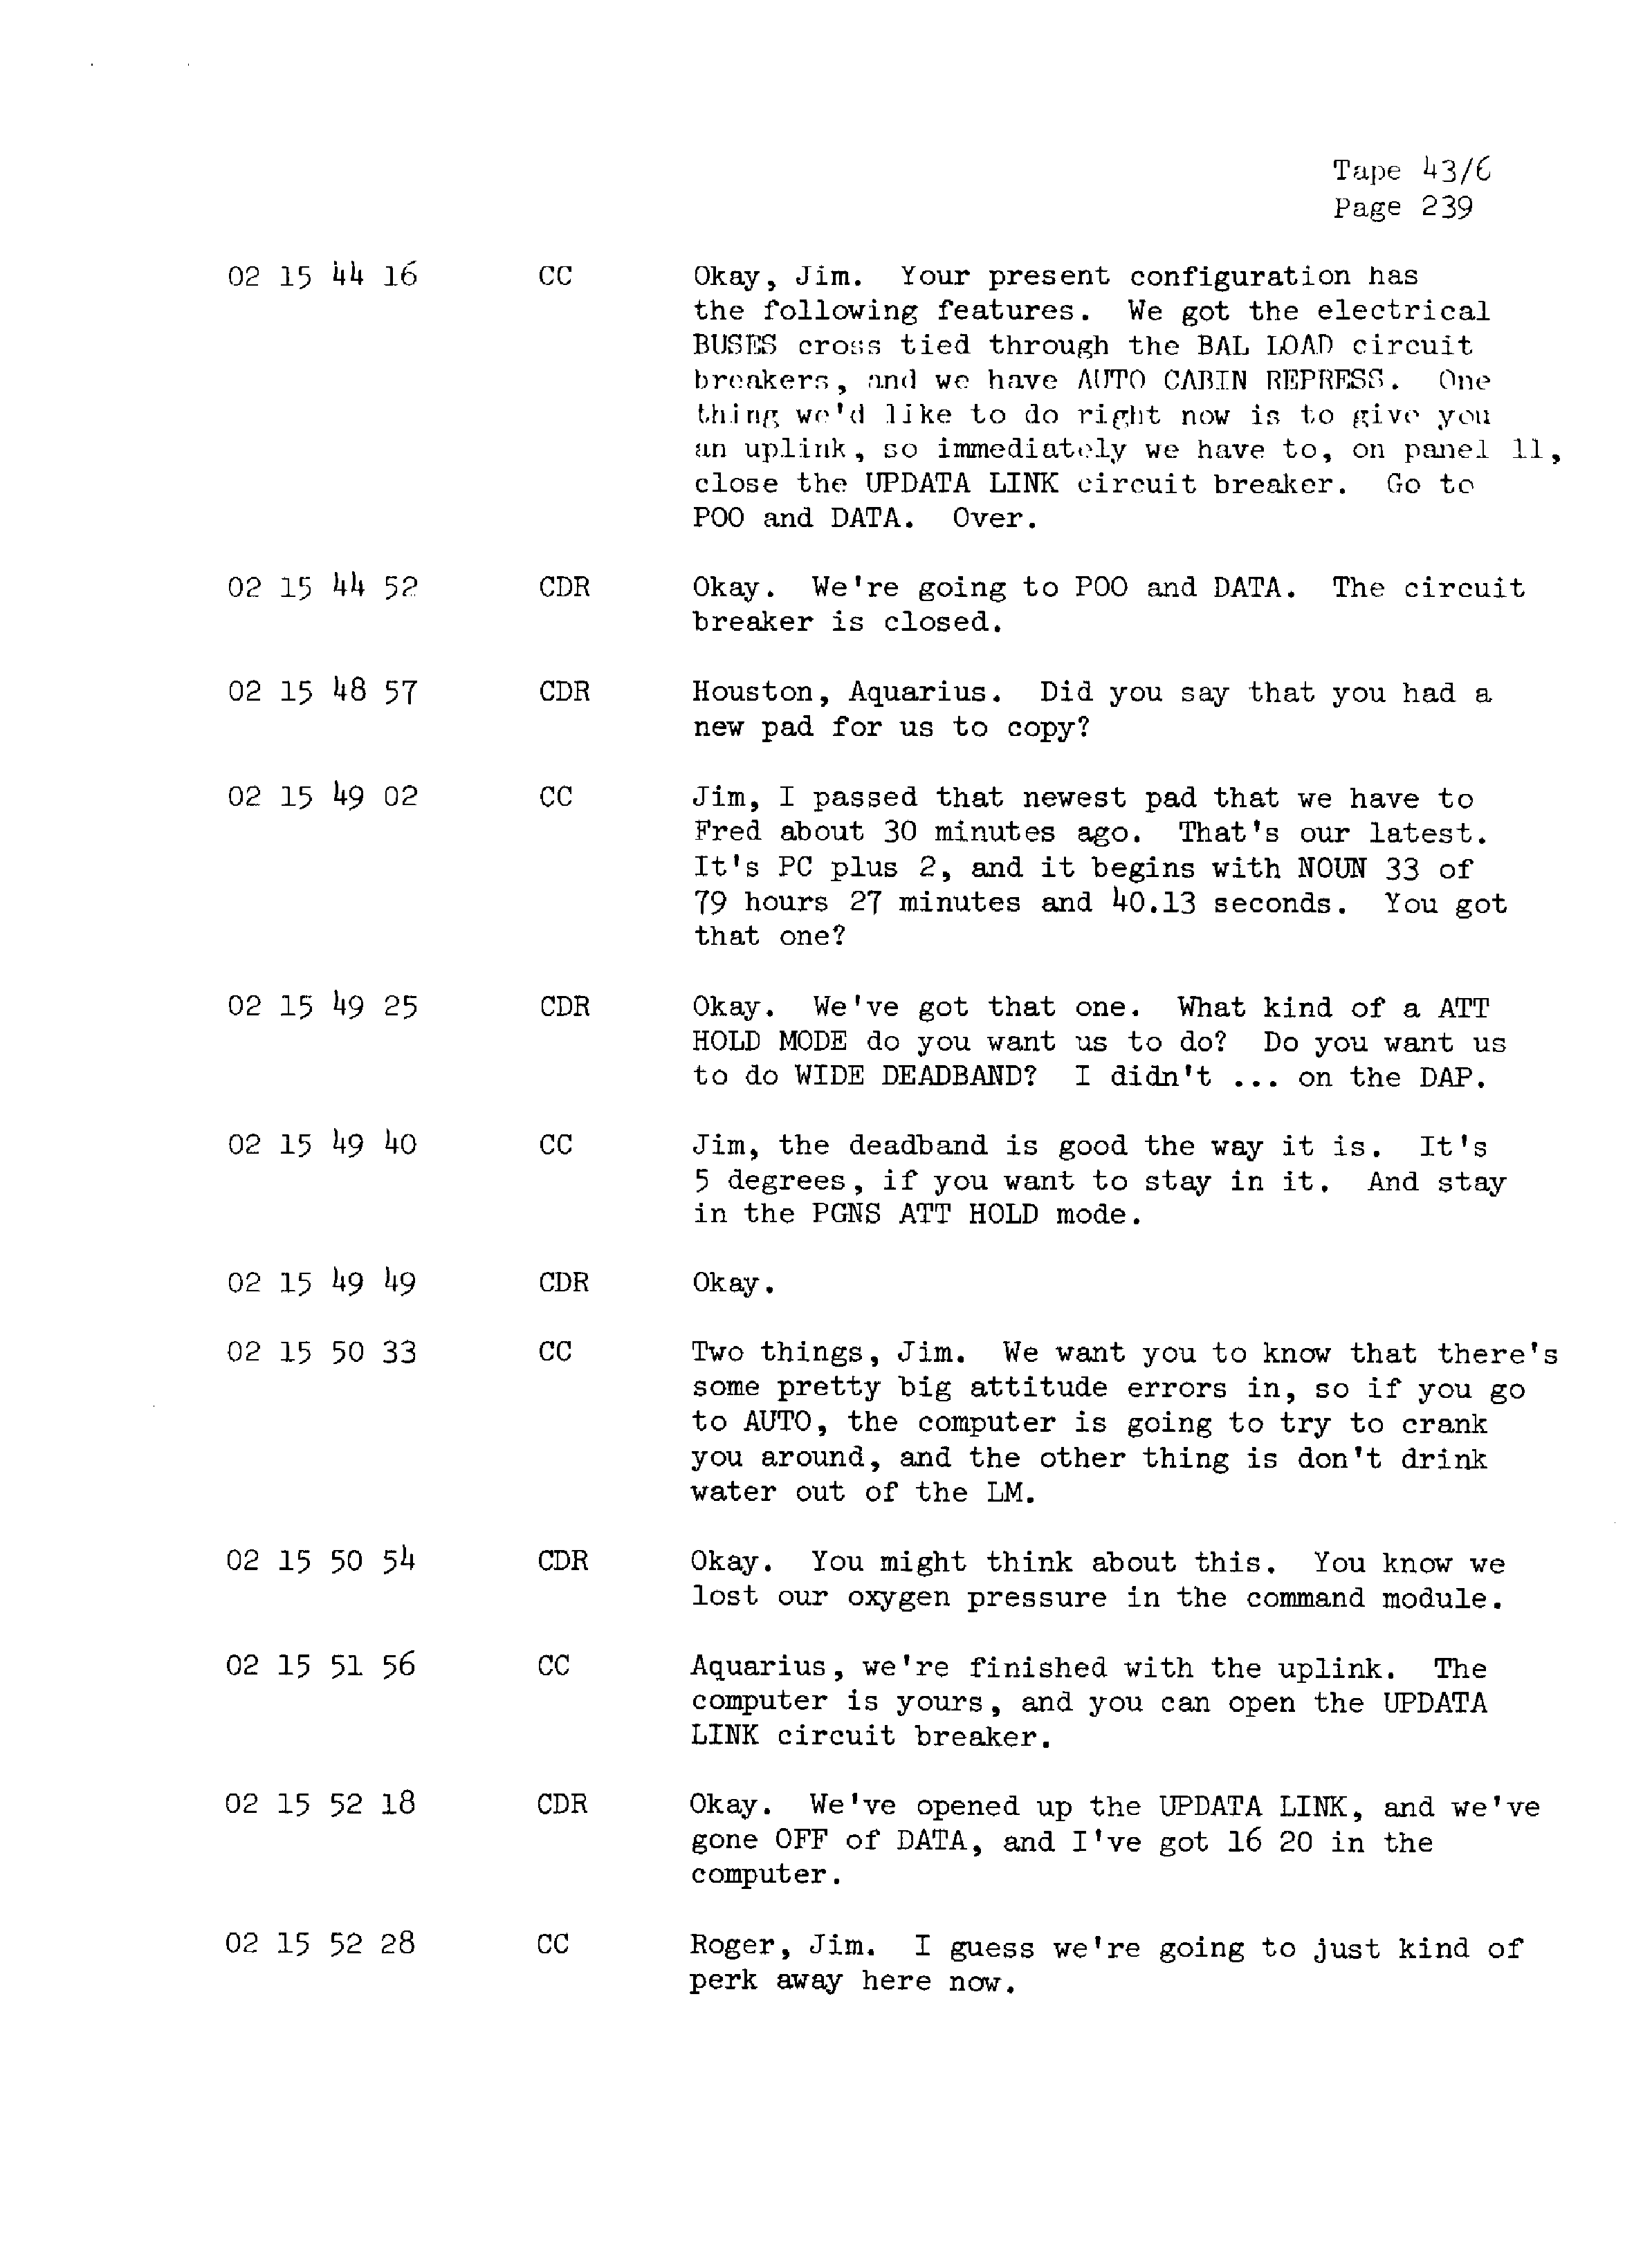 Page 246 of Apollo 13’s original transcript